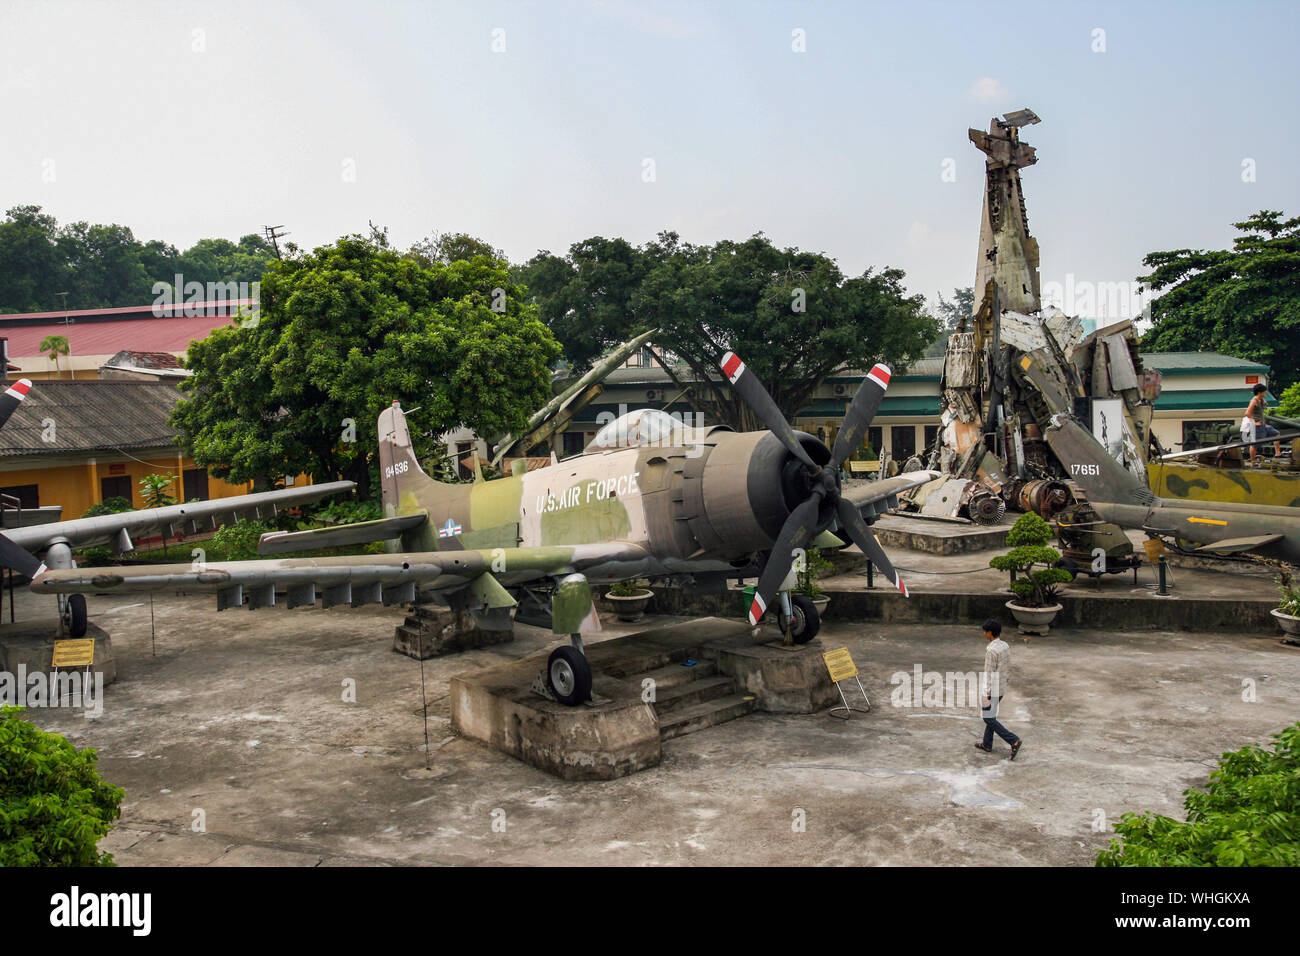 HANOI, VIETNAM - Sep 2, 2009: Amerikanische A-1 Skyhawker bomber Flugzeug in Hanoi War Museum bewahrt, dahinter ein Stapel der amerikanischen Flugzeuge abgeschossen. Stockfoto